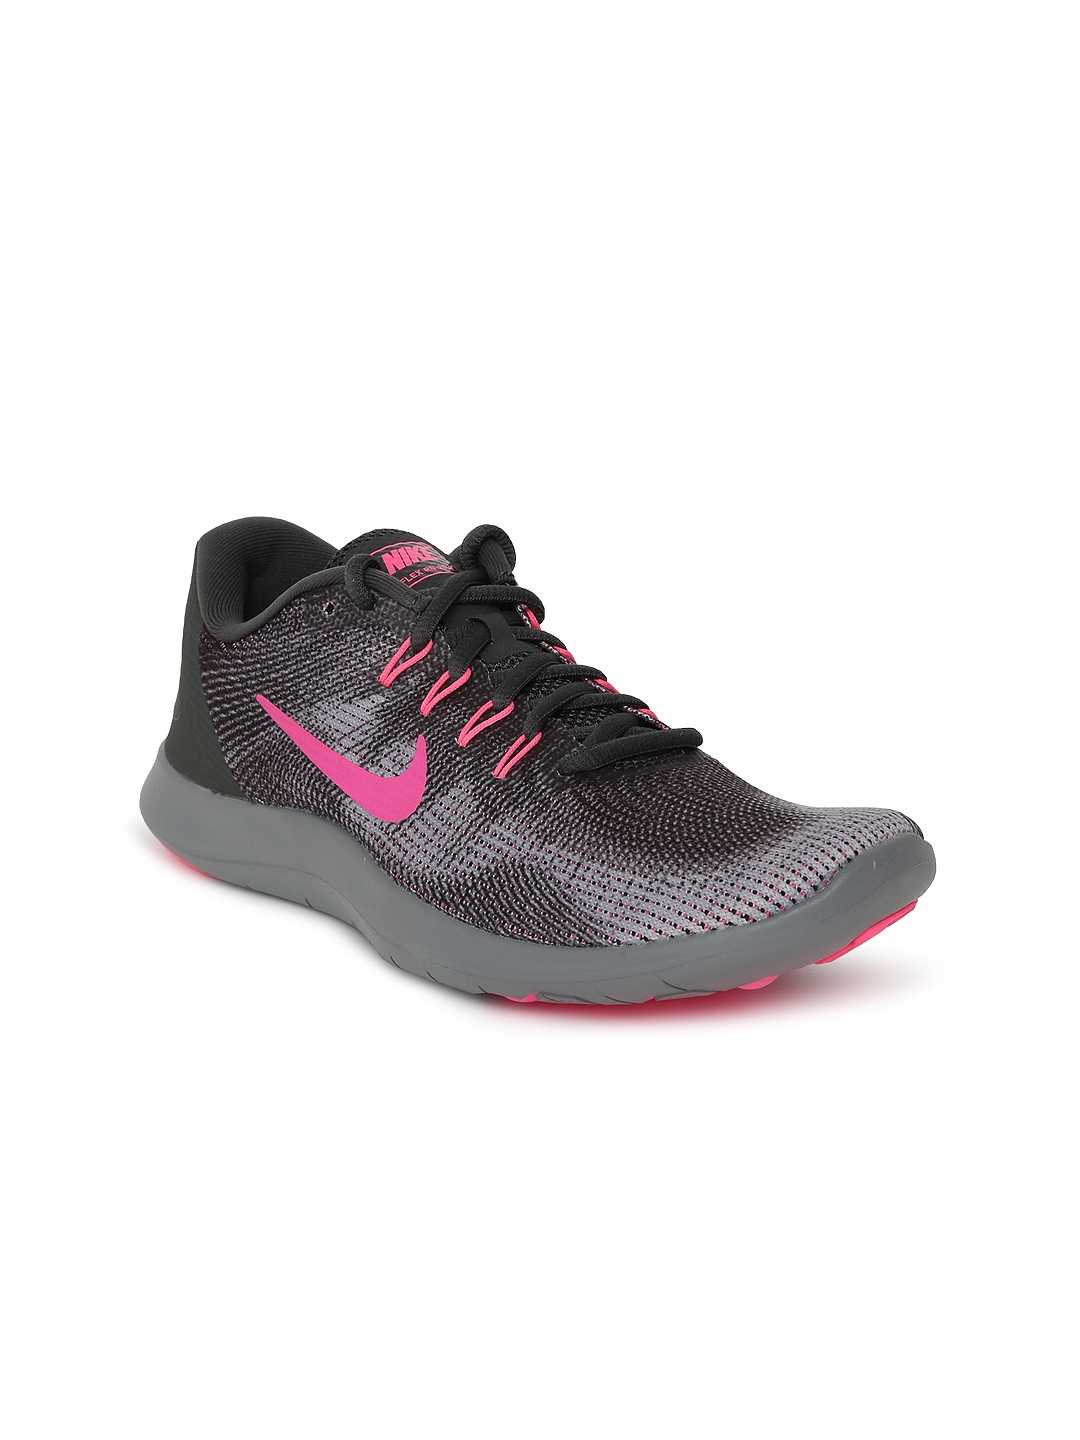 Grey \u0026 Pink Flex RN 2018 Running Shoes 